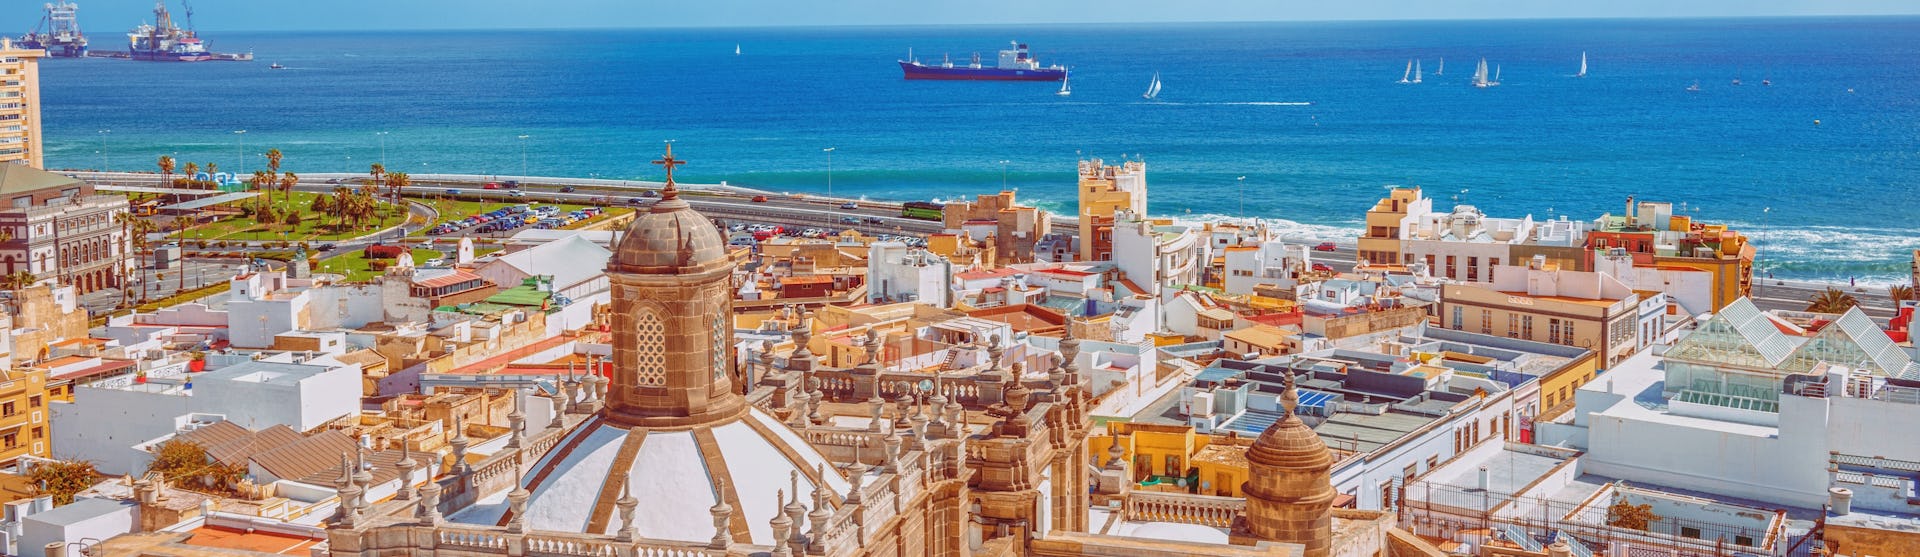 Ofertas de crucero por Gran Canaria